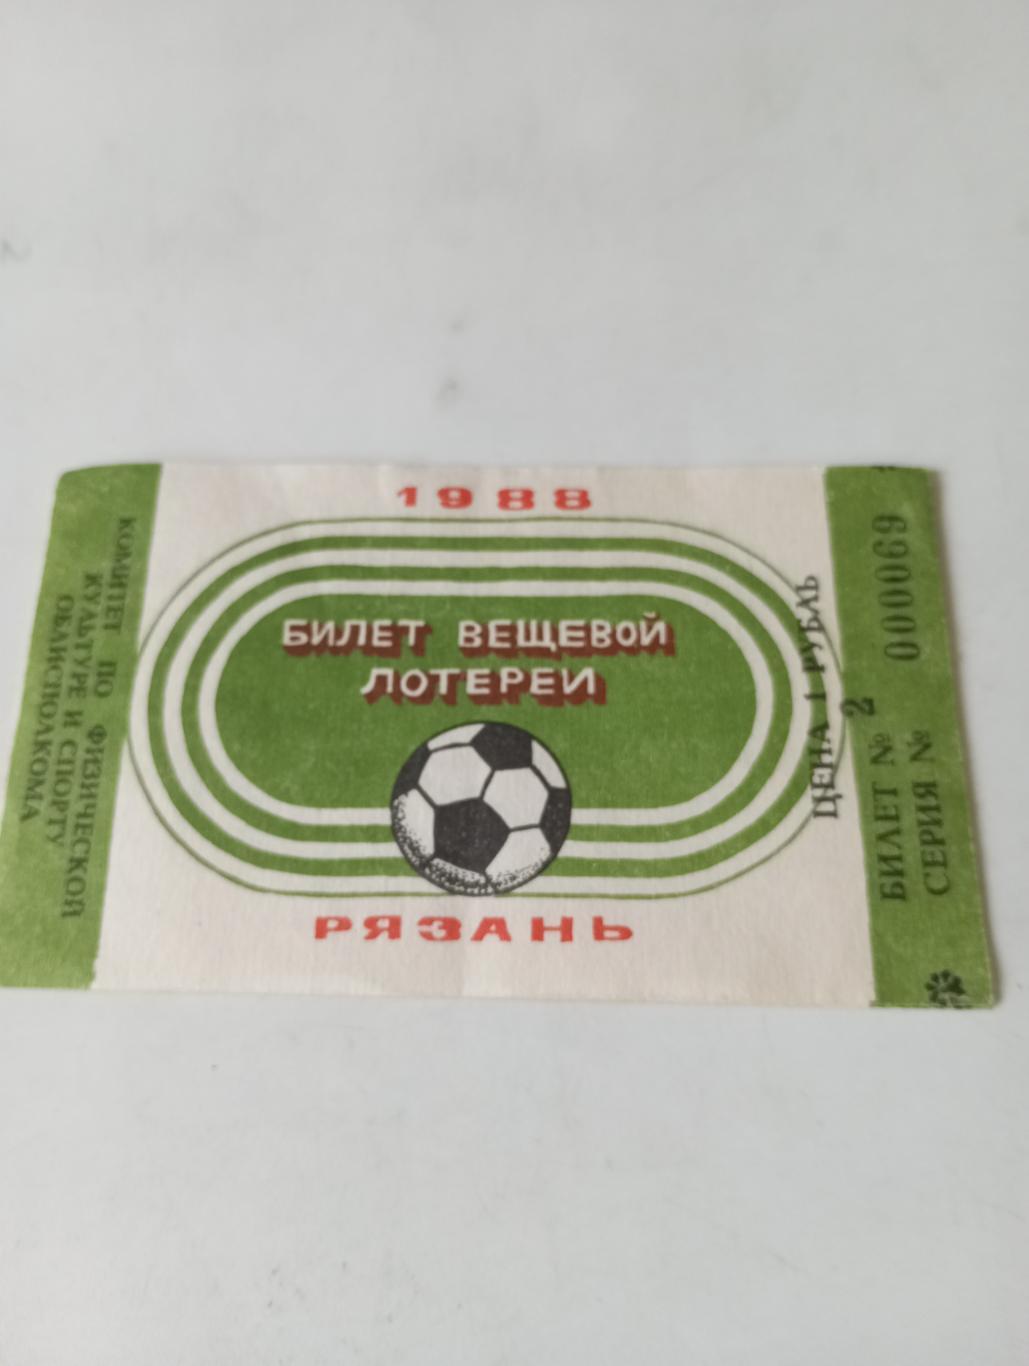 Билет..Рязань 1988 (вещевой лотереи) футбол